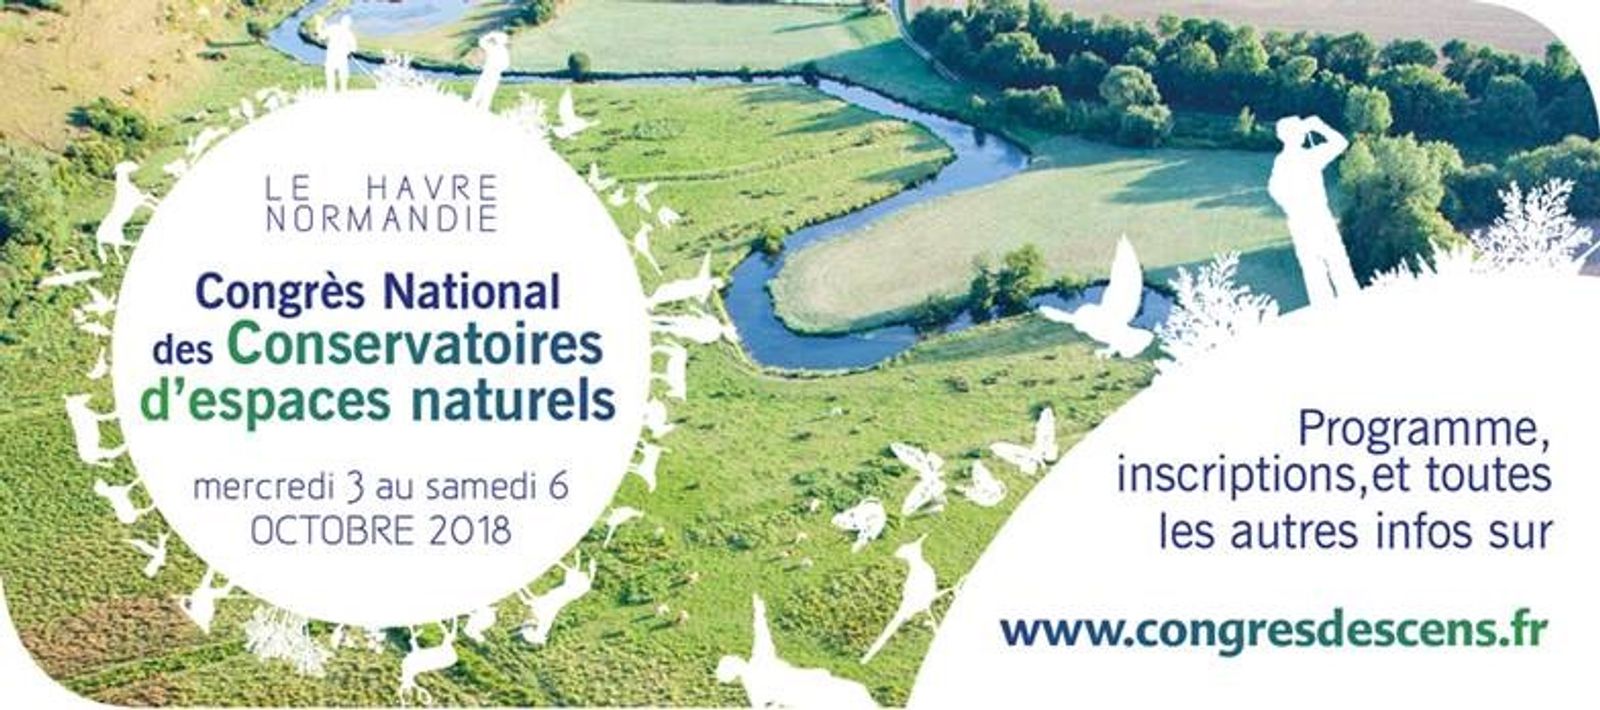 Congrès National des Conservatoires d'Espaces naturels en direct "De la source à l'estuaire, pour une gestion durable et partagée"